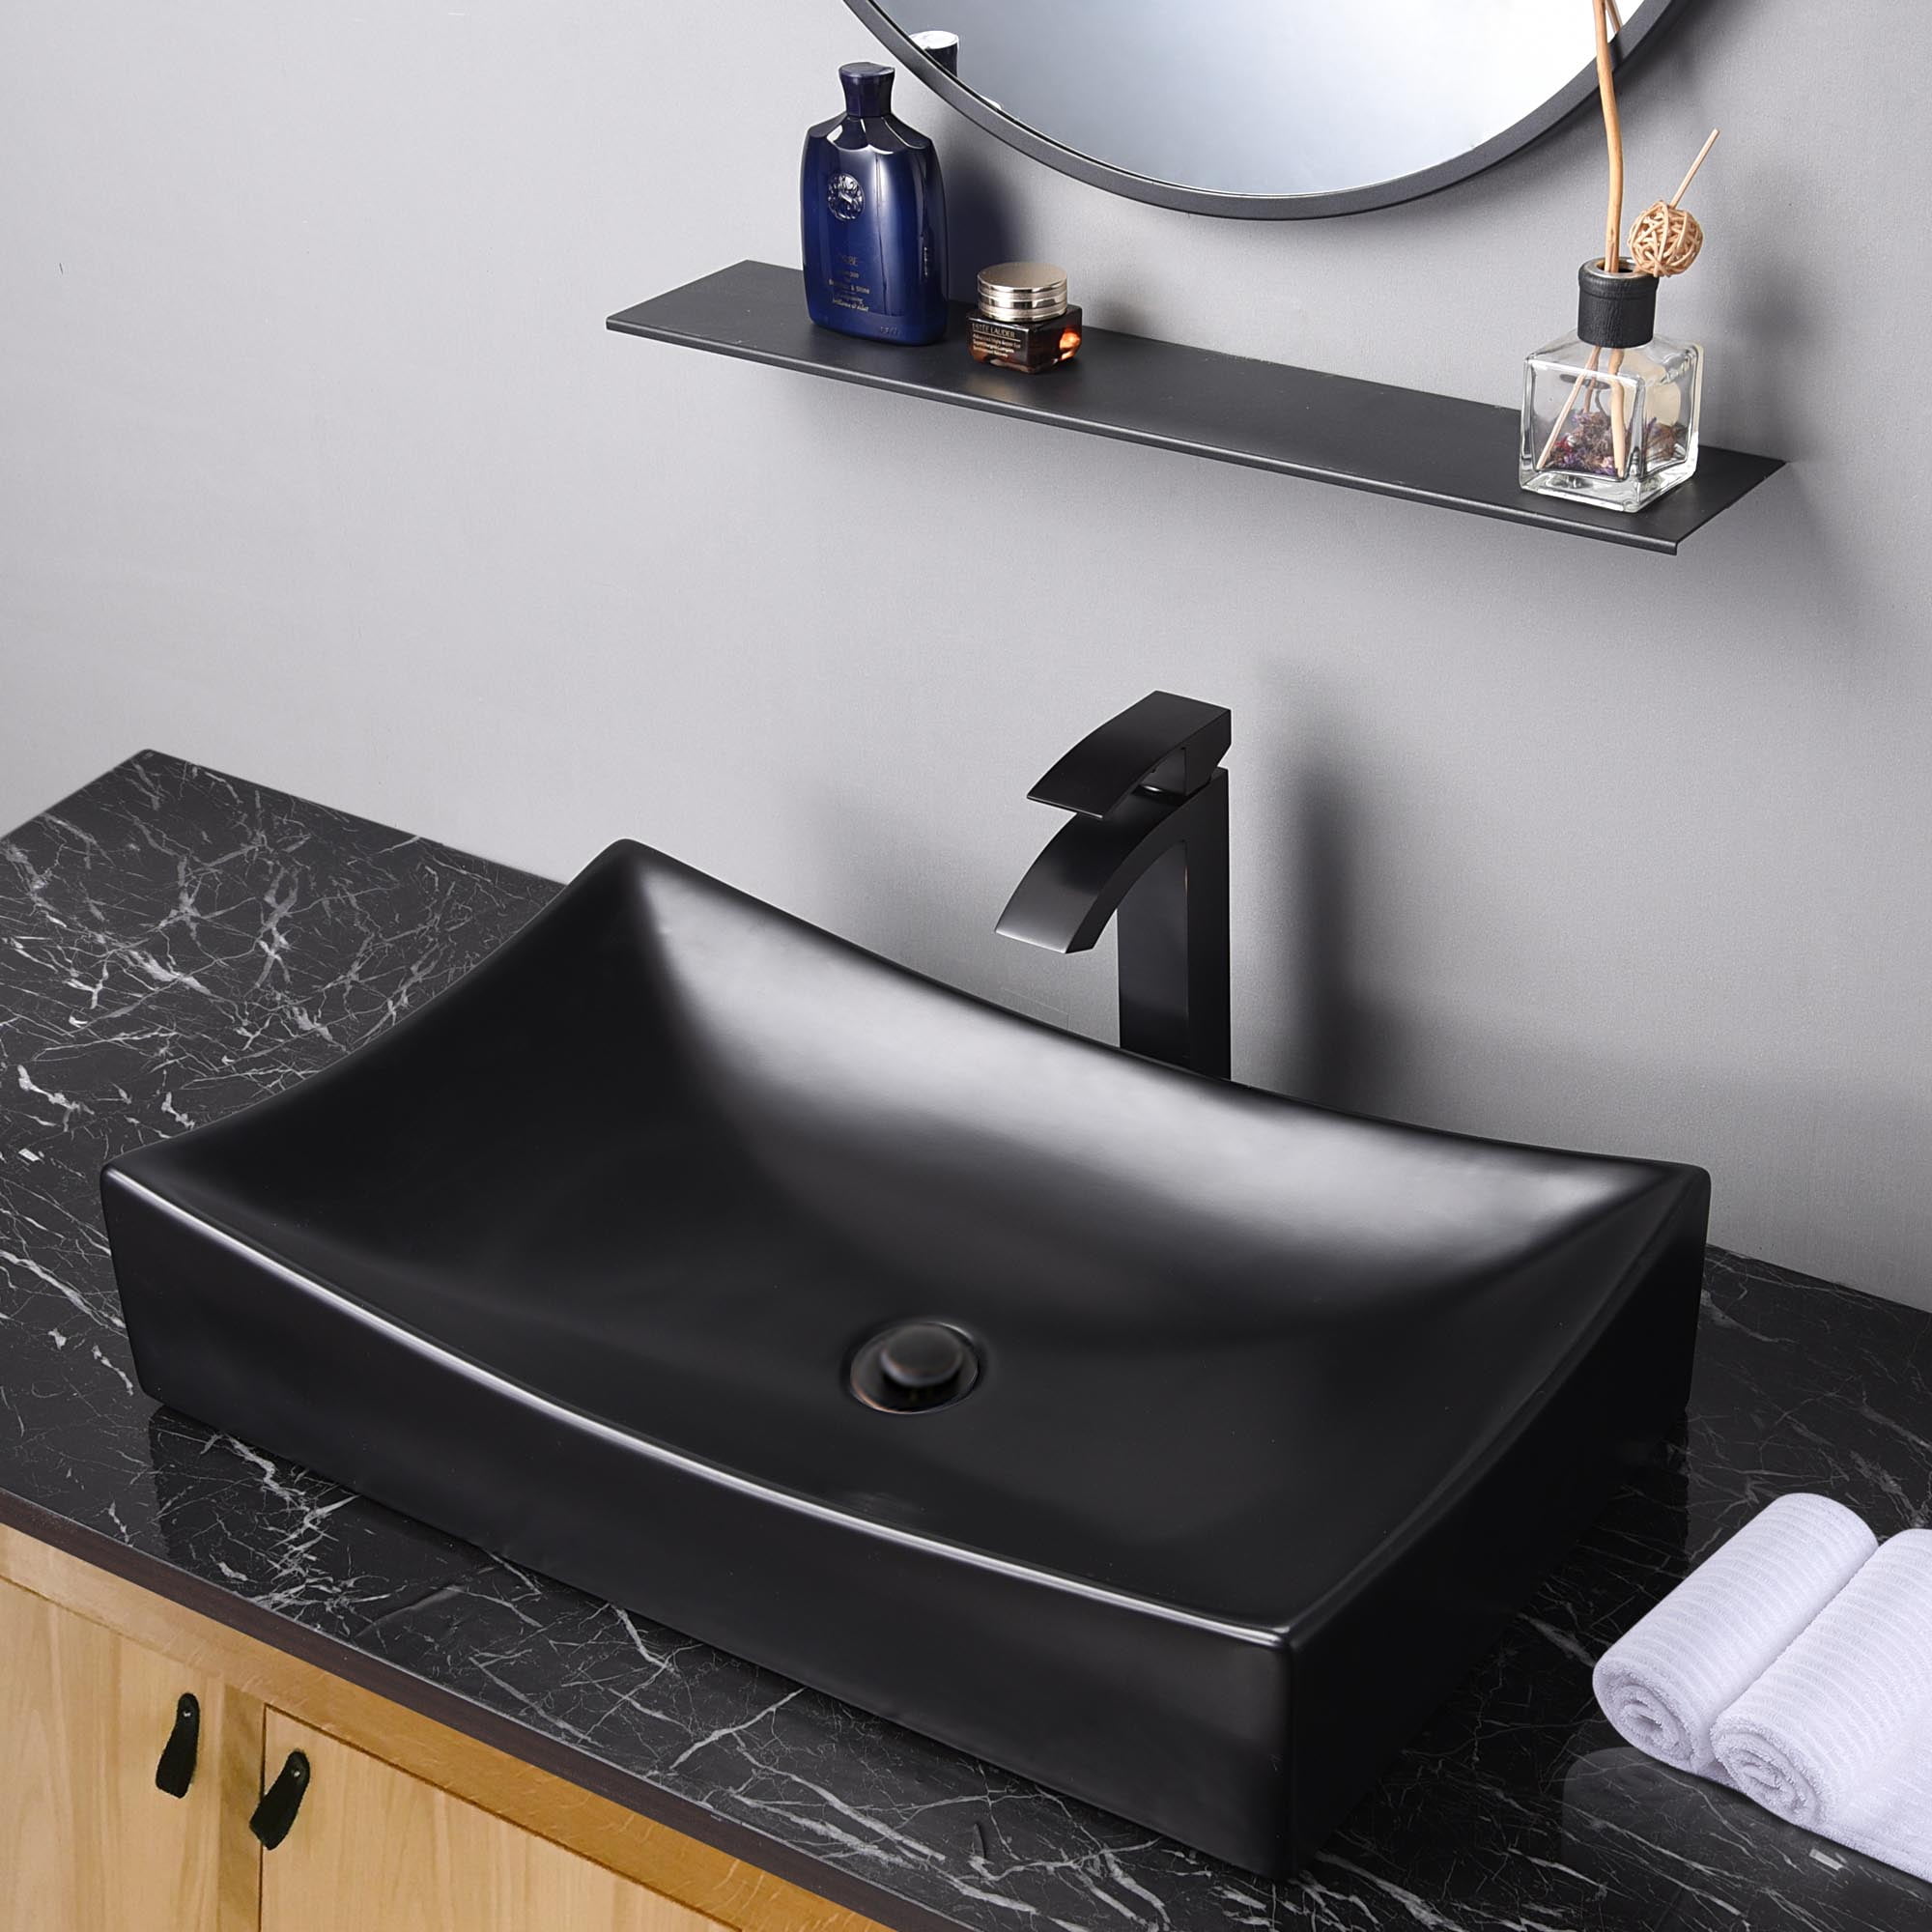 26" Black Rectangle Bathroom Vessel Sink Above Counter Porcelain Pop up Drain 